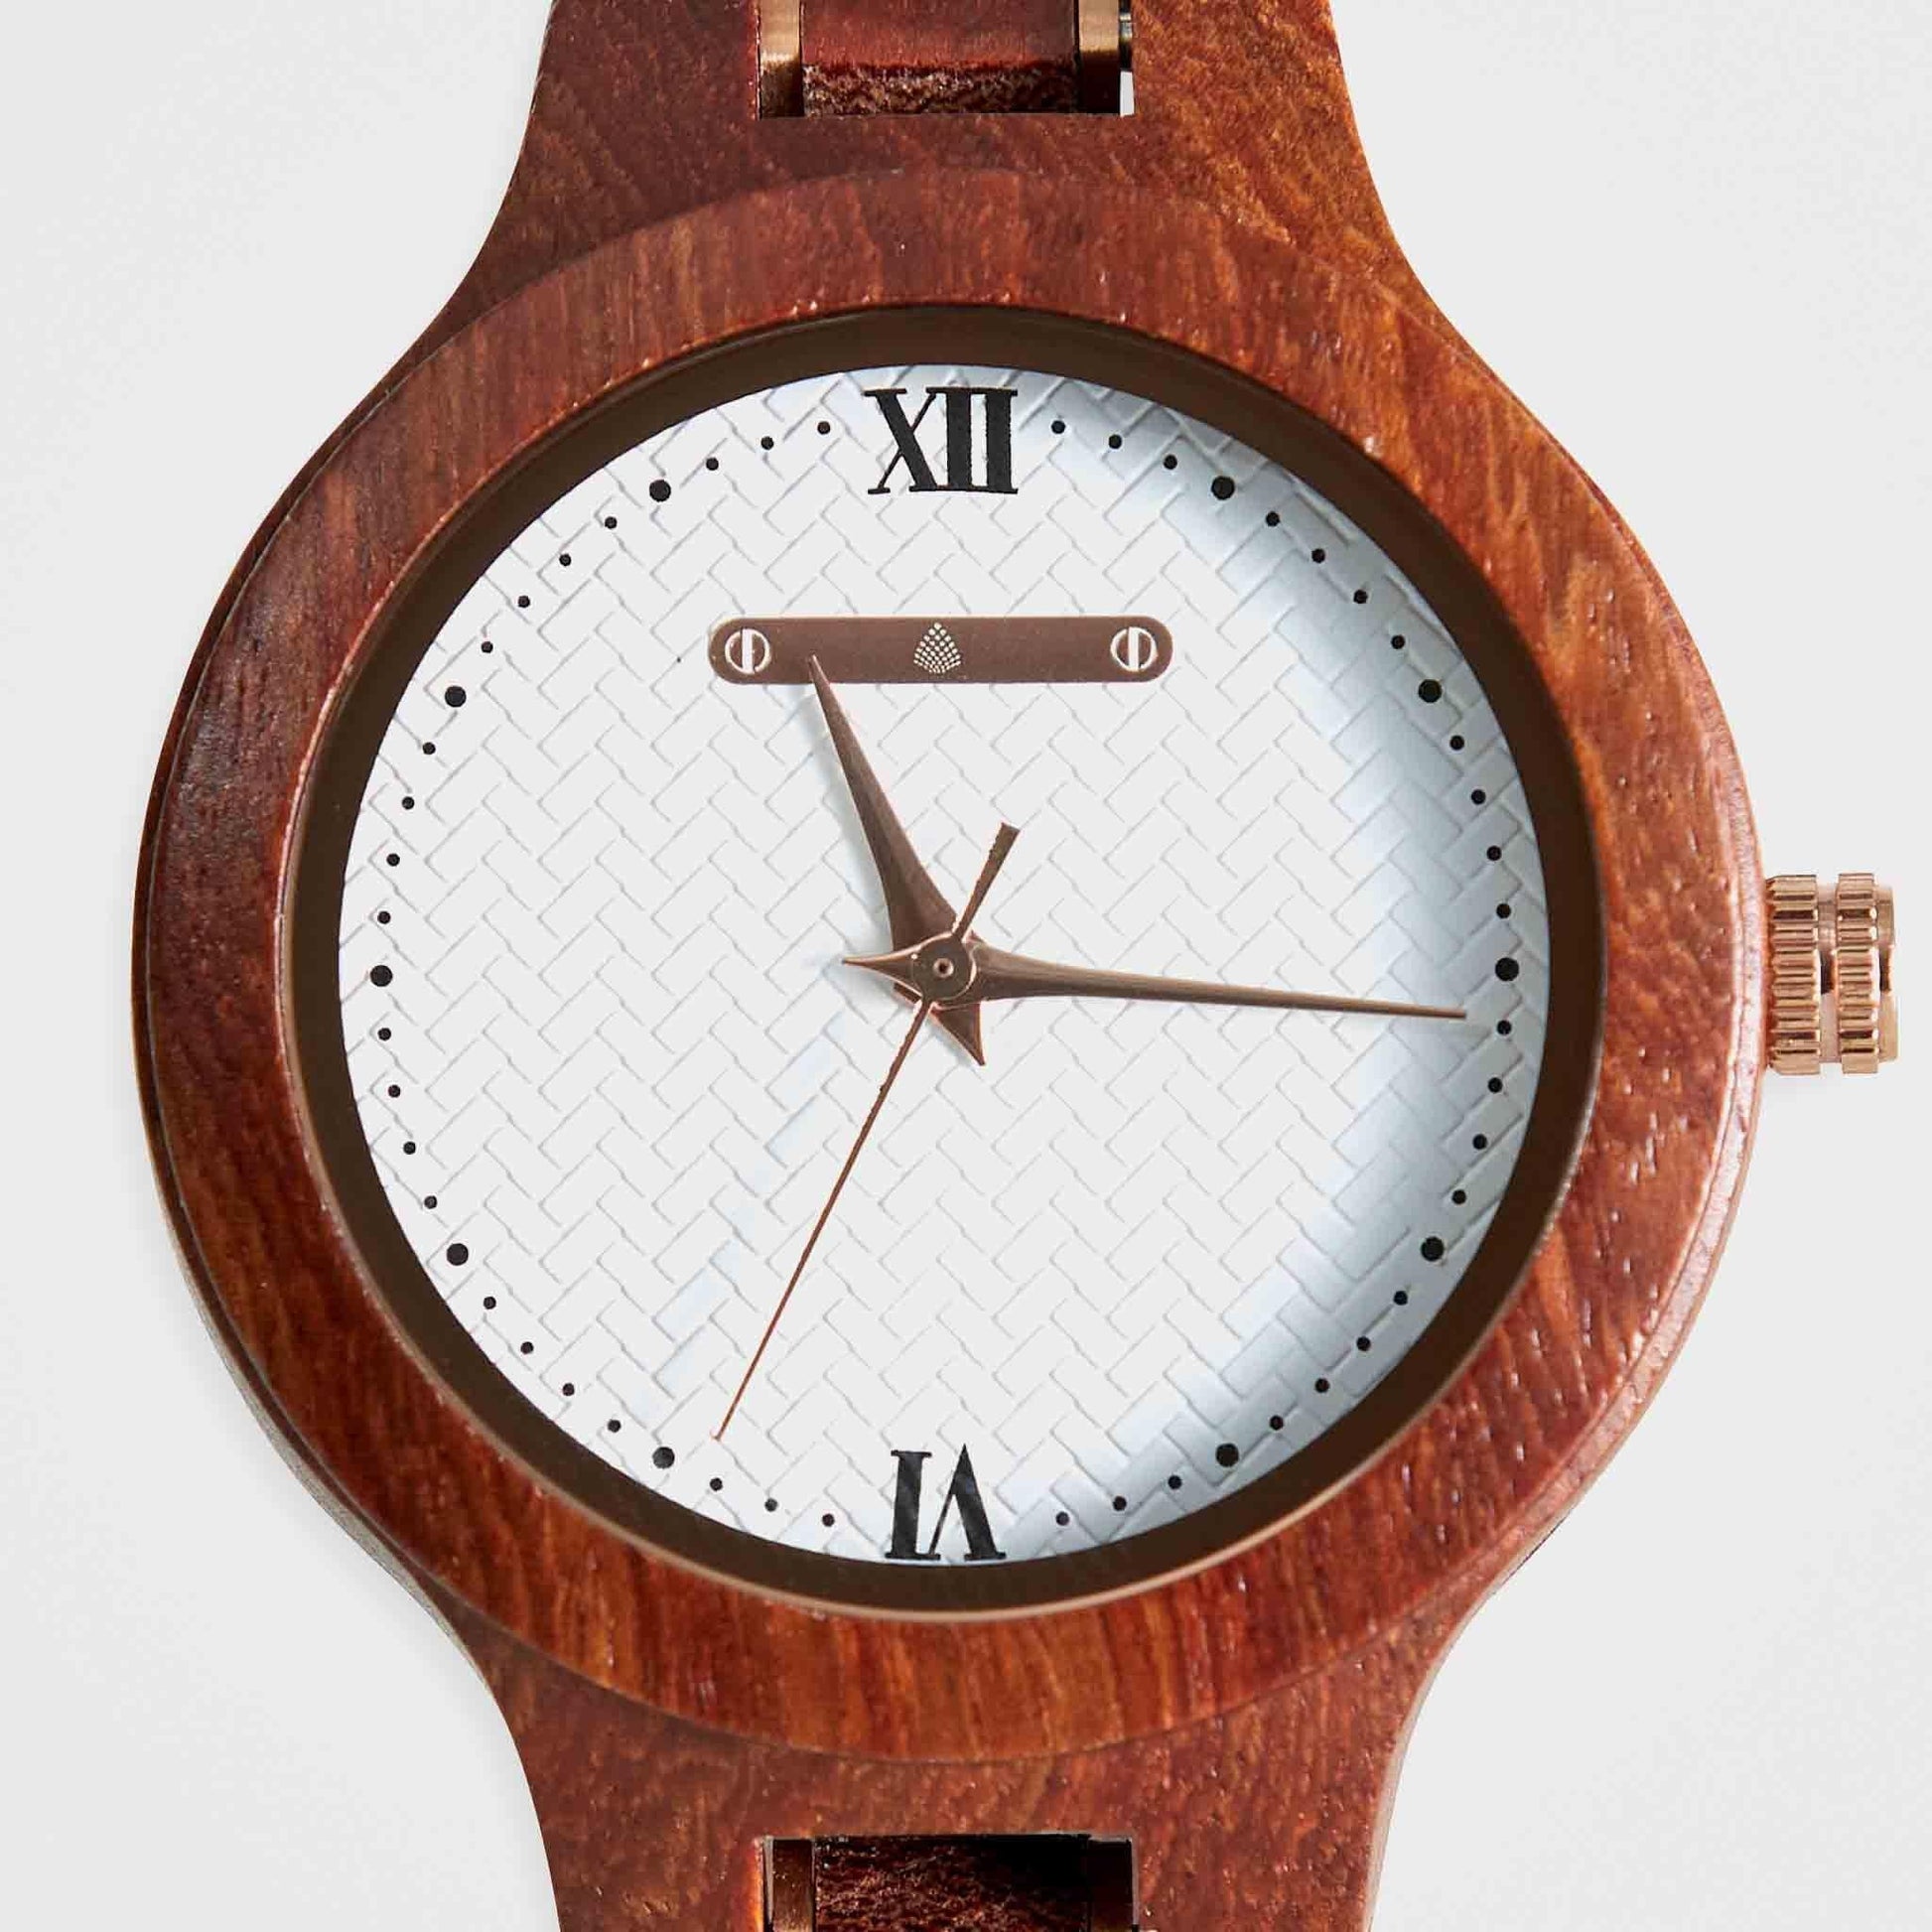 Handmade Wooden Wristwatch For Women: The Mangolia